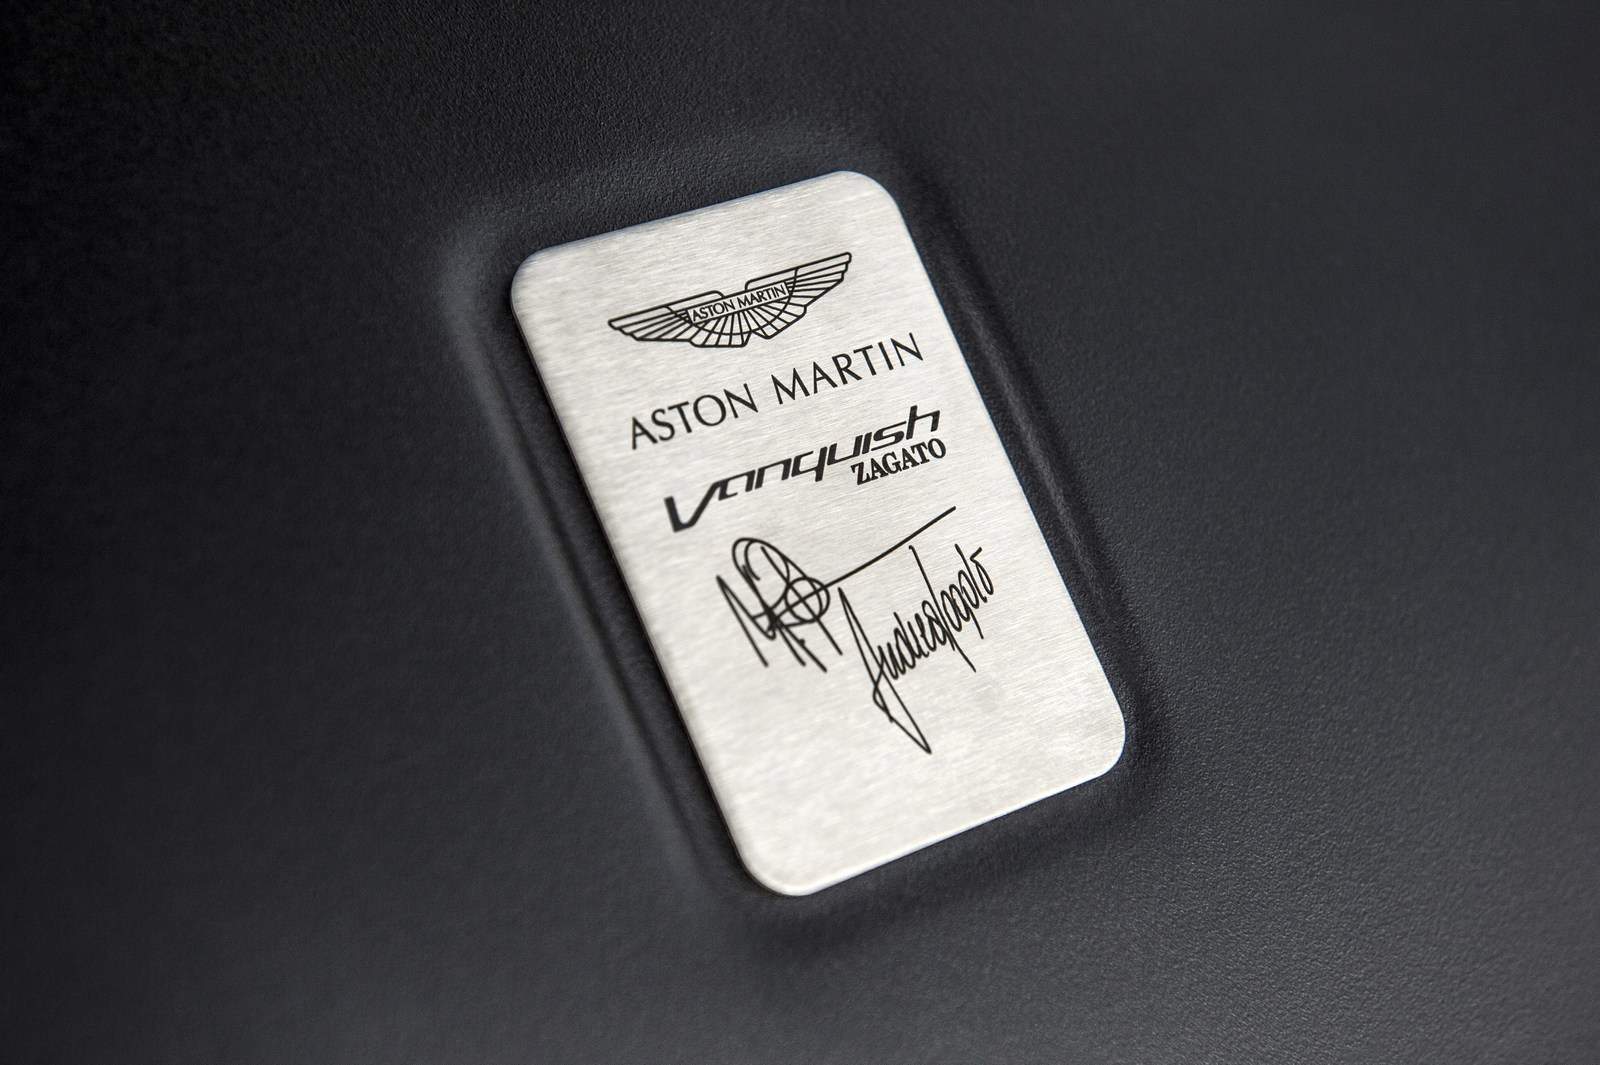 Aston Martin Vanquish Zagato 22